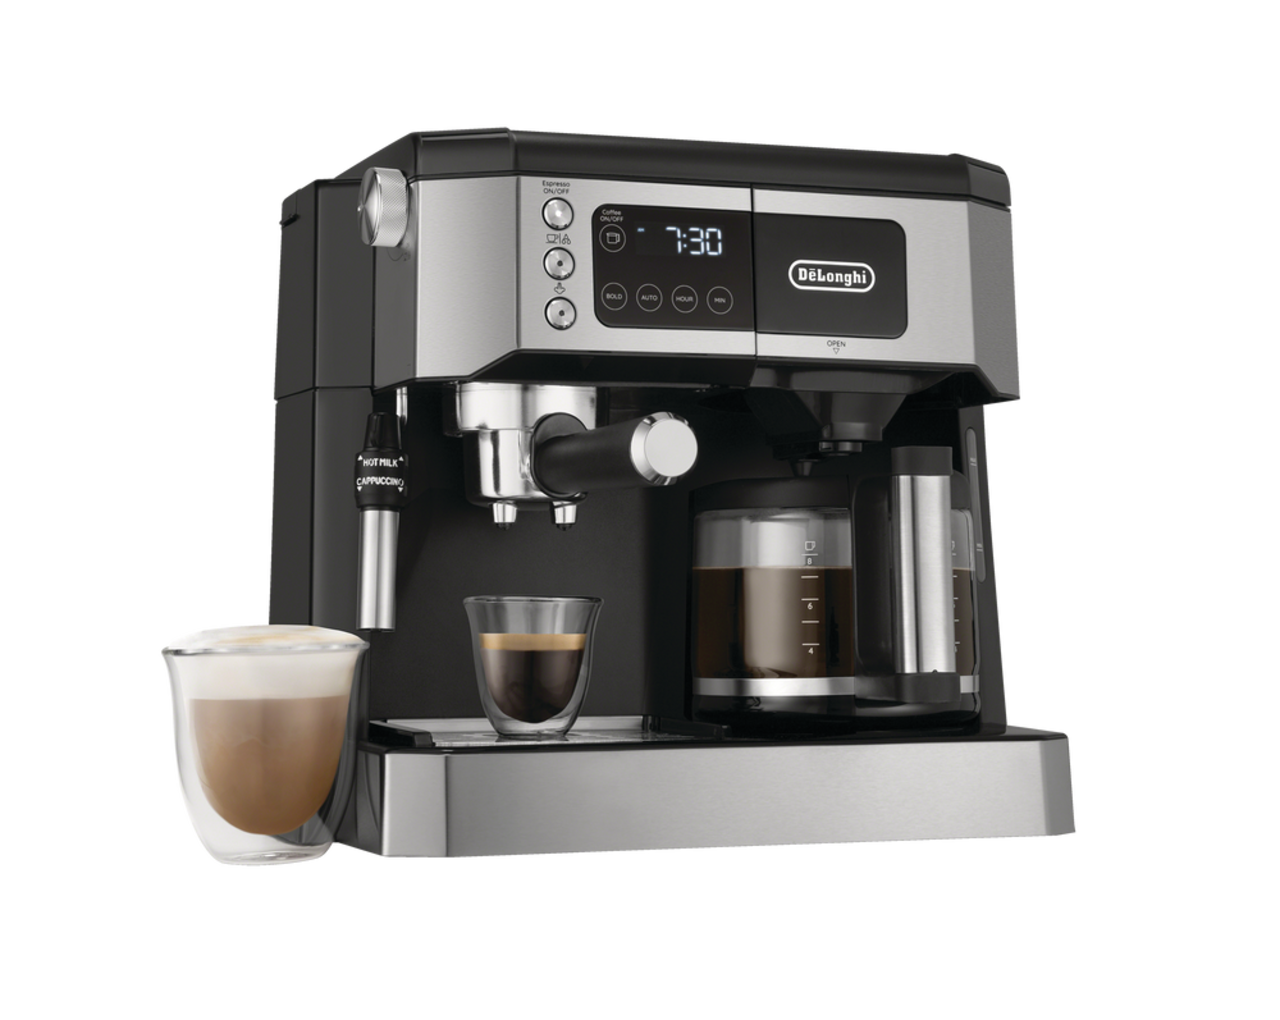 Machine à café : ce modèle simple et efficace passe à moins de 33